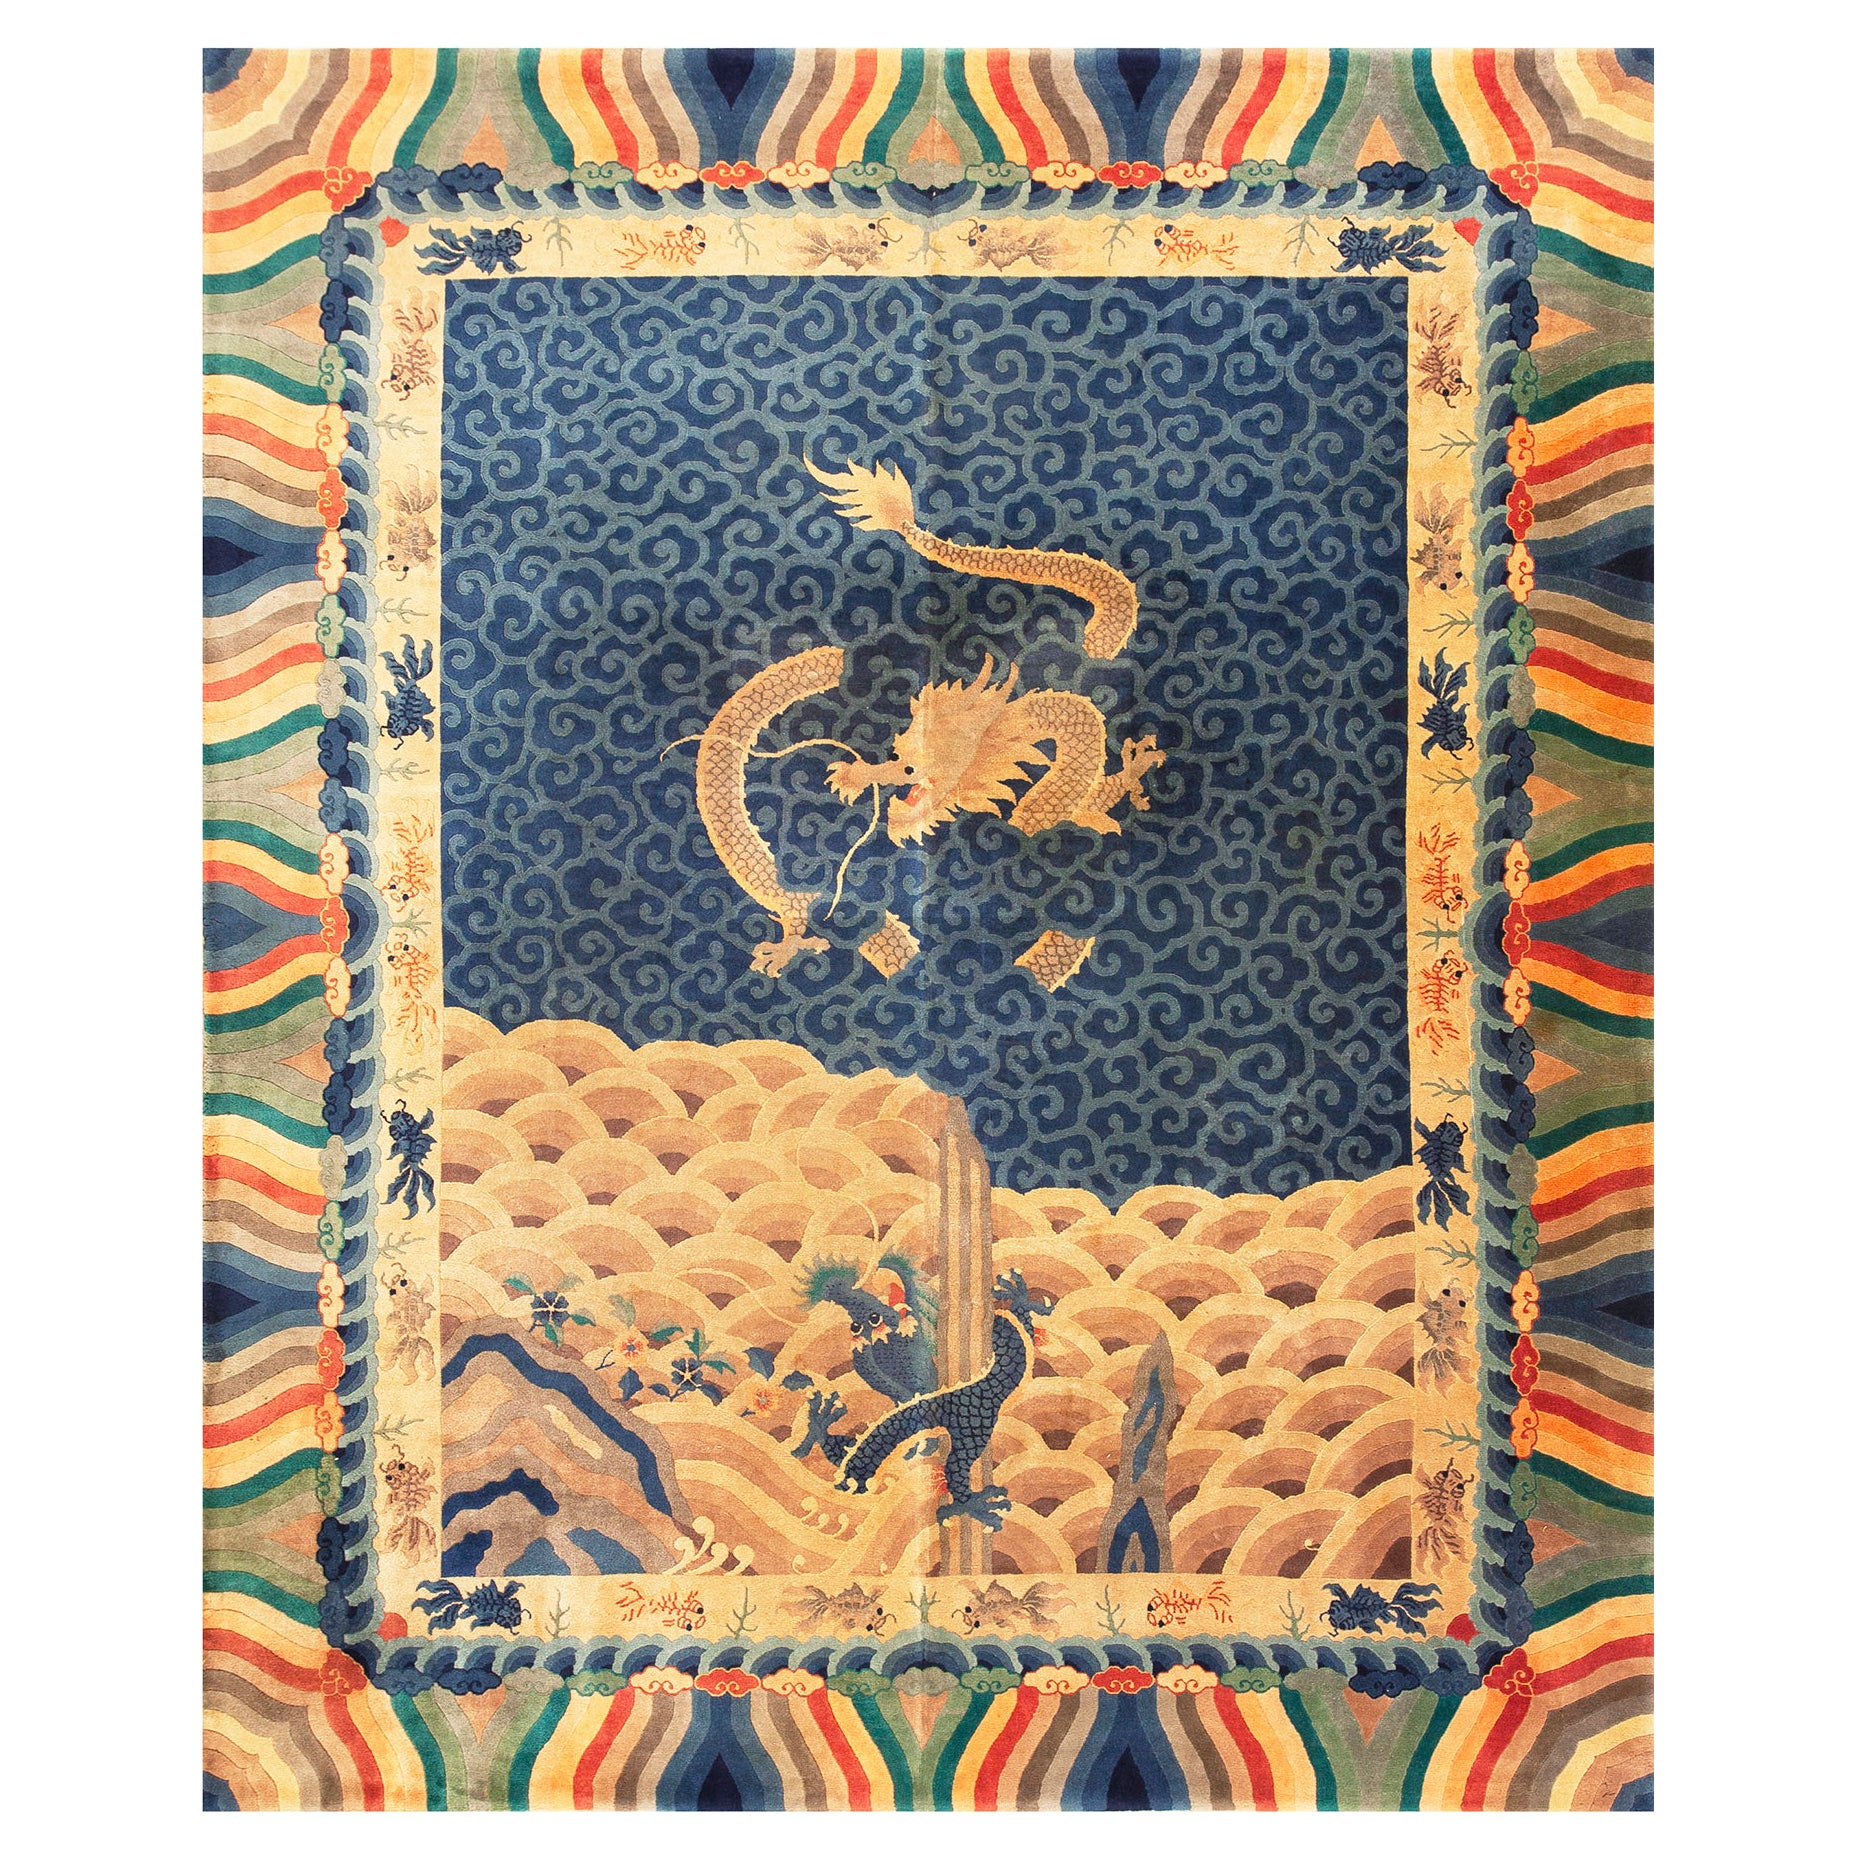 Chinesischer Art-Déco-Teppich von Nichols Workshop aus den 1920er Jahren (8' 6"" x 10' 6'' - 260 x 320)